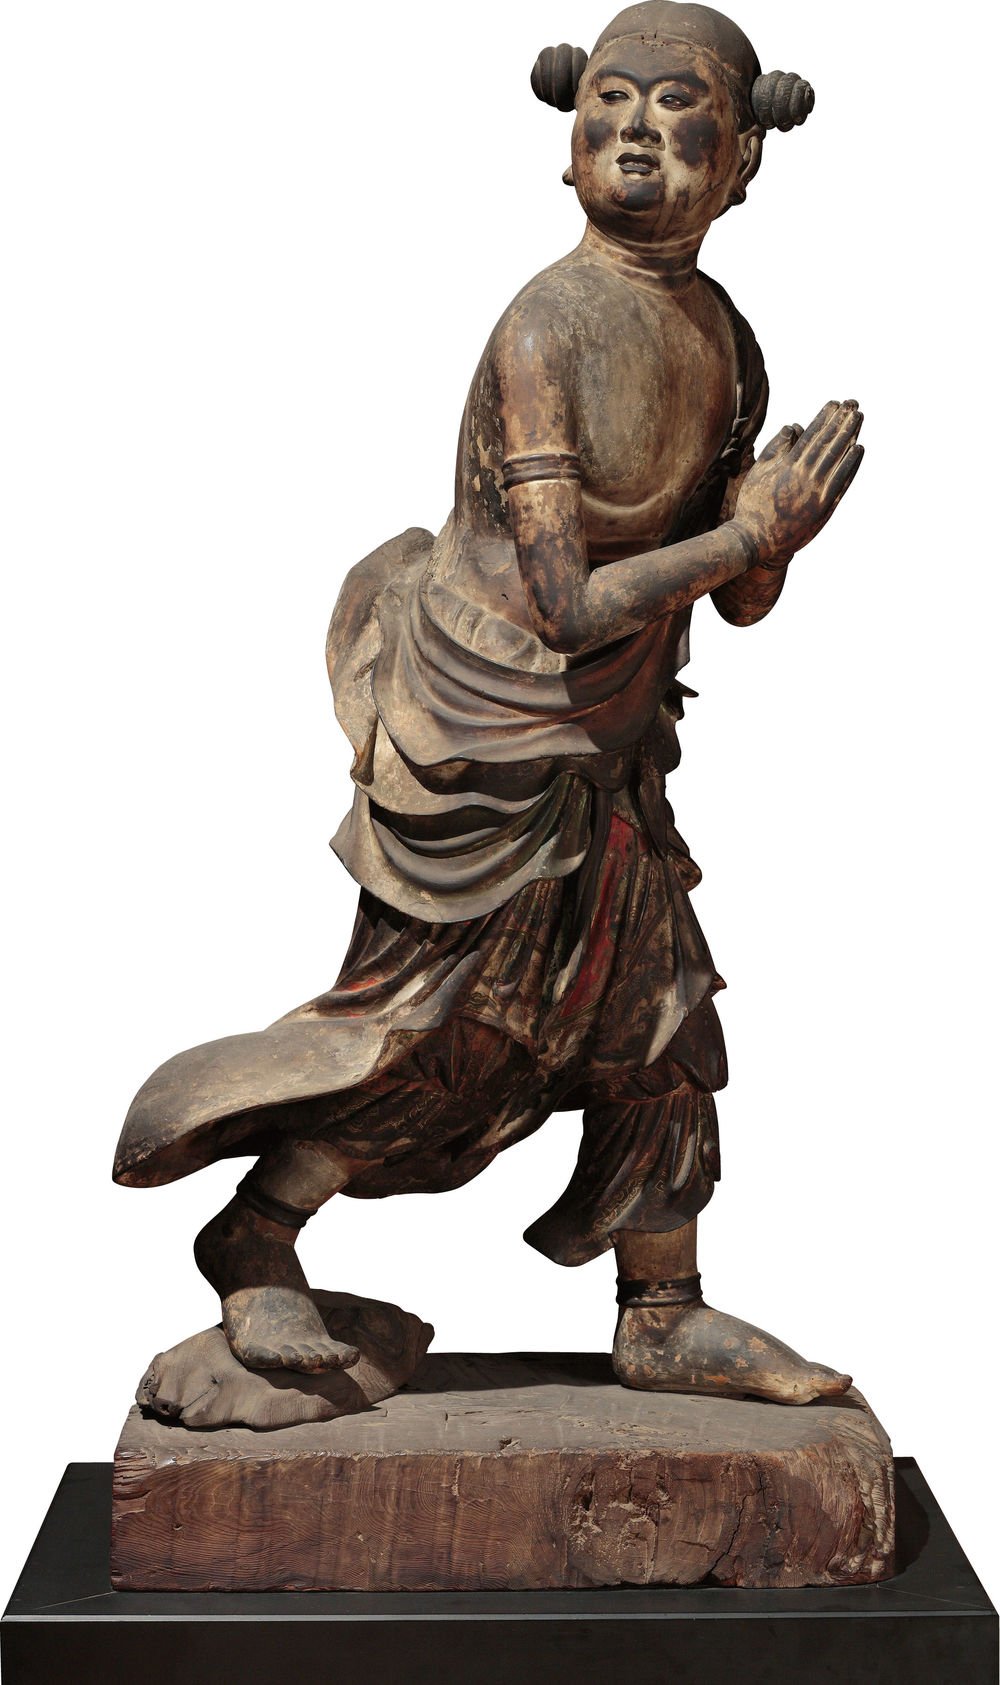 国宝　善財童子立像（文殊菩薩および侍者のうち）　鎌倉時代・建仁3年（1203）～承久2年(1220)　奈良・安倍文殊院蔵